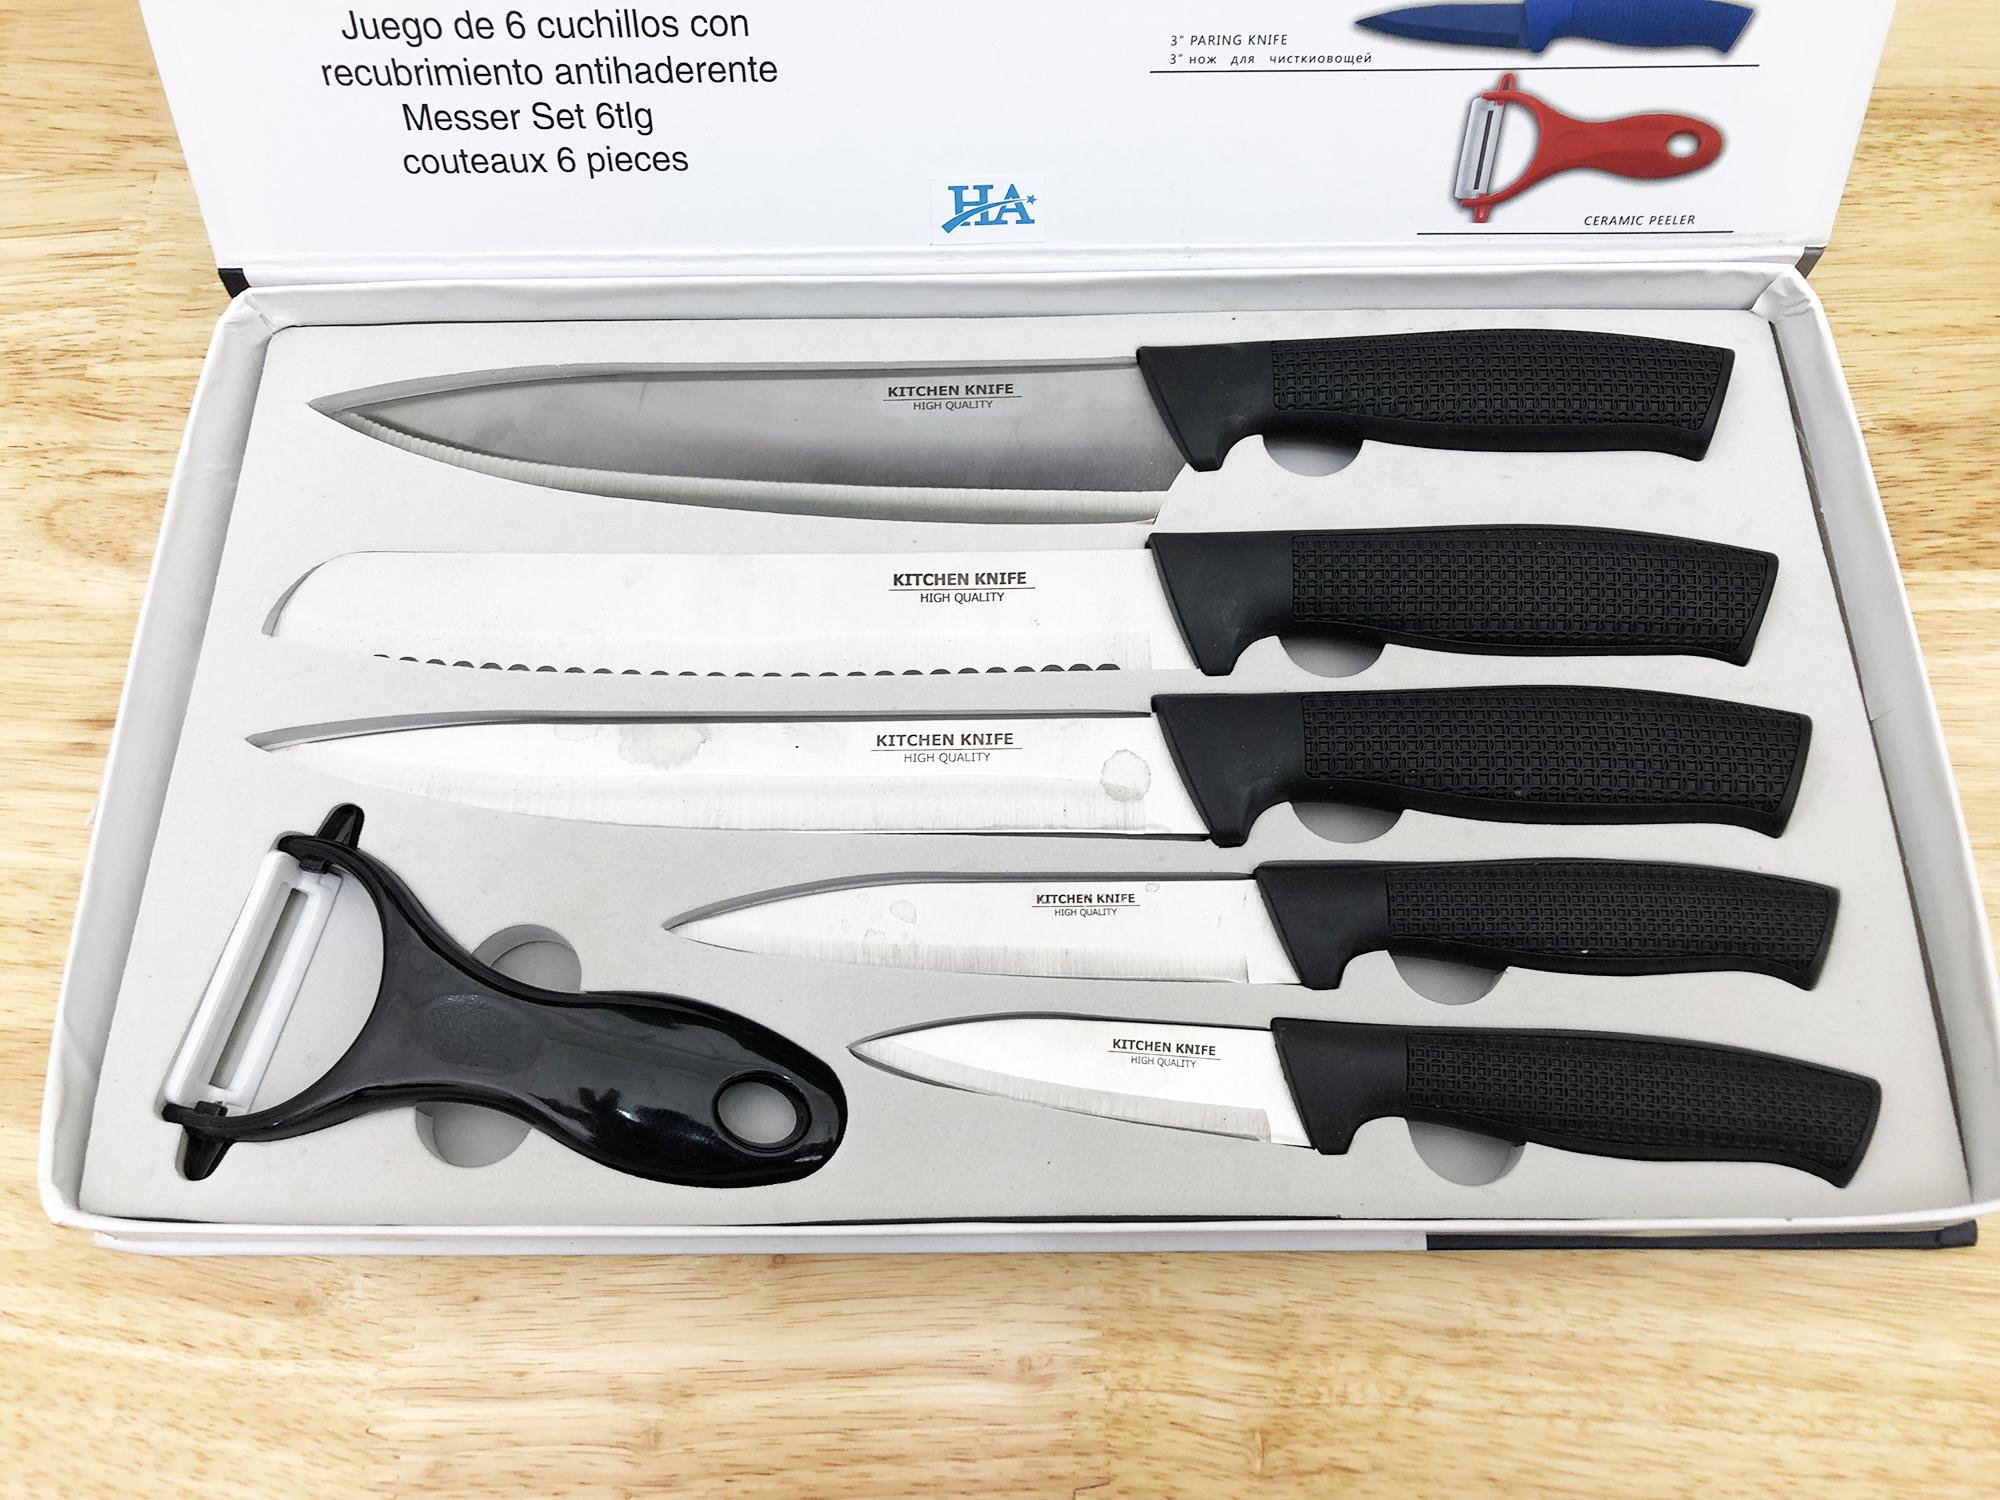 Bộ dao nhà bếp 6 món: 5 dao và 1 dụng cụ gọt vỏ trái cây GDSUNG14